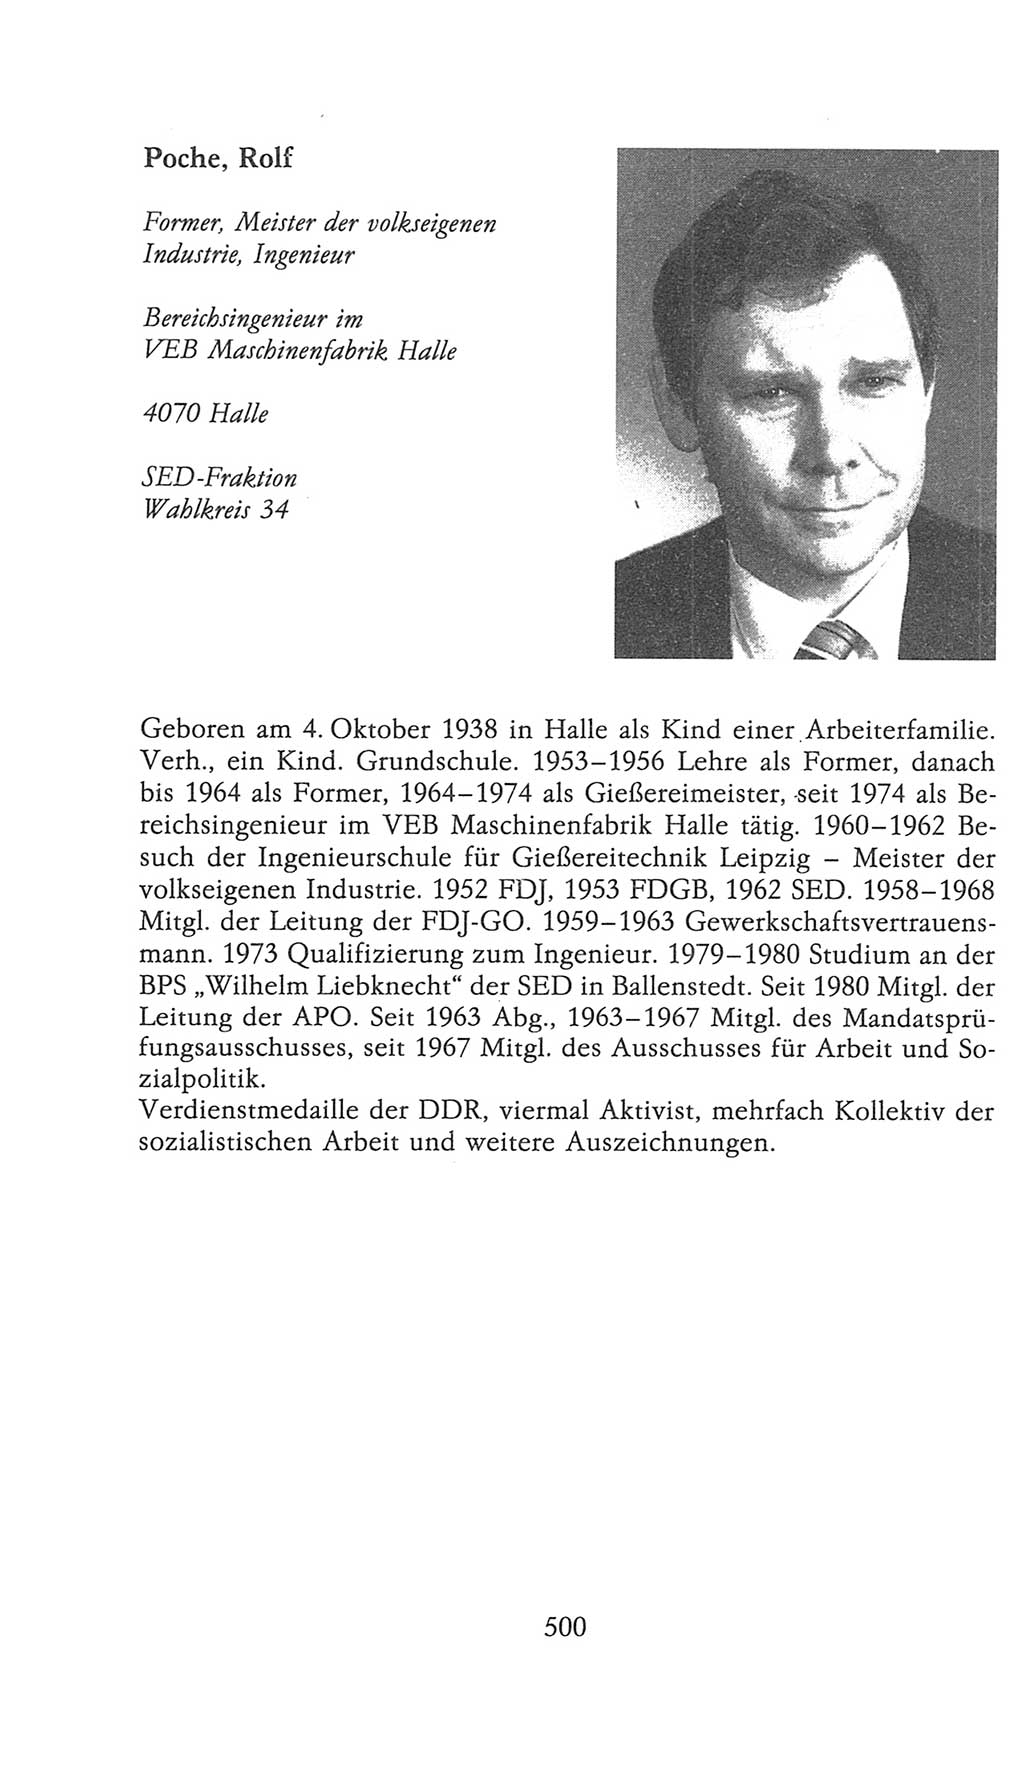 Volkskammer (VK) der Deutschen Demokratischen Republik (DDR), 9. Wahlperiode 1986-1990, Seite 500 (VK. DDR 9. WP. 1986-1990, S. 500)